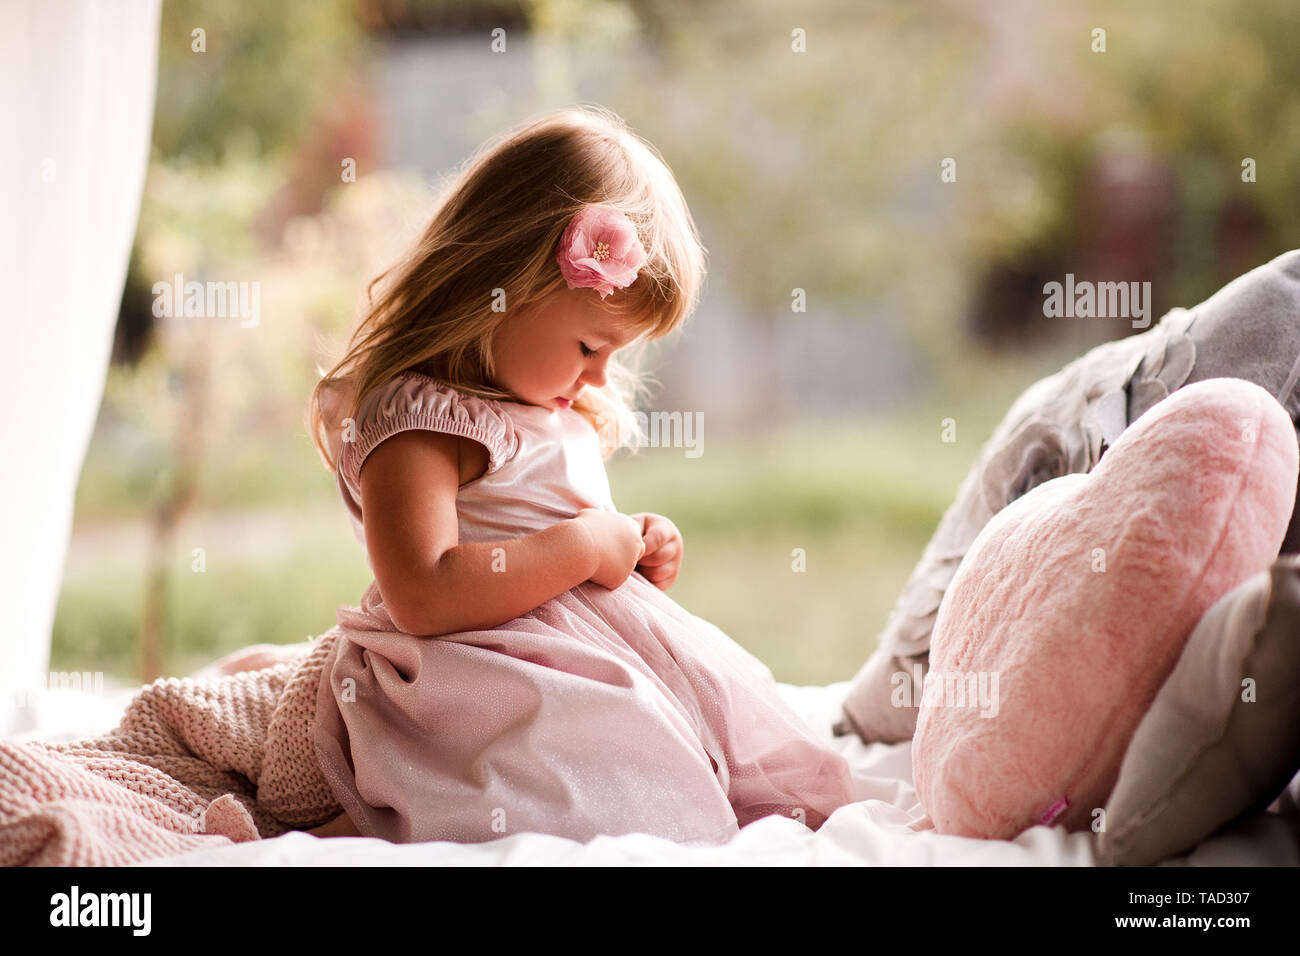 Cute Baby Mädchen 2-3 Jahre alten tragen stilvolle Prinzessin Kleid im Bett  mit Kissen sitzen im Freien Stockfotografie - Alamy